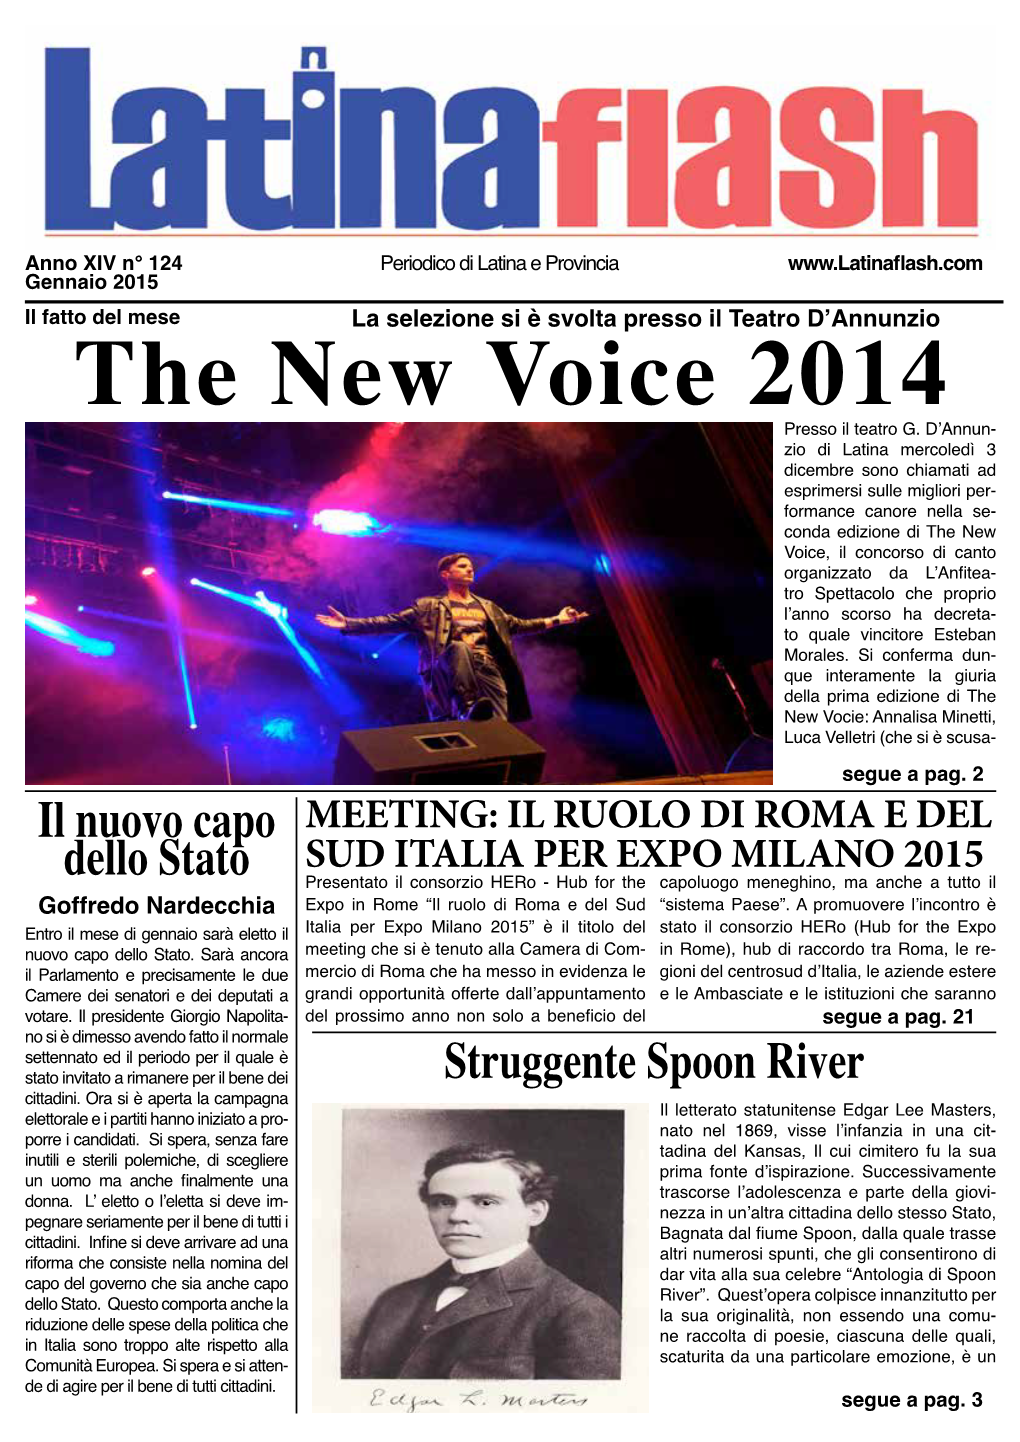 The New Voice 2014 Presso Il Teatro G